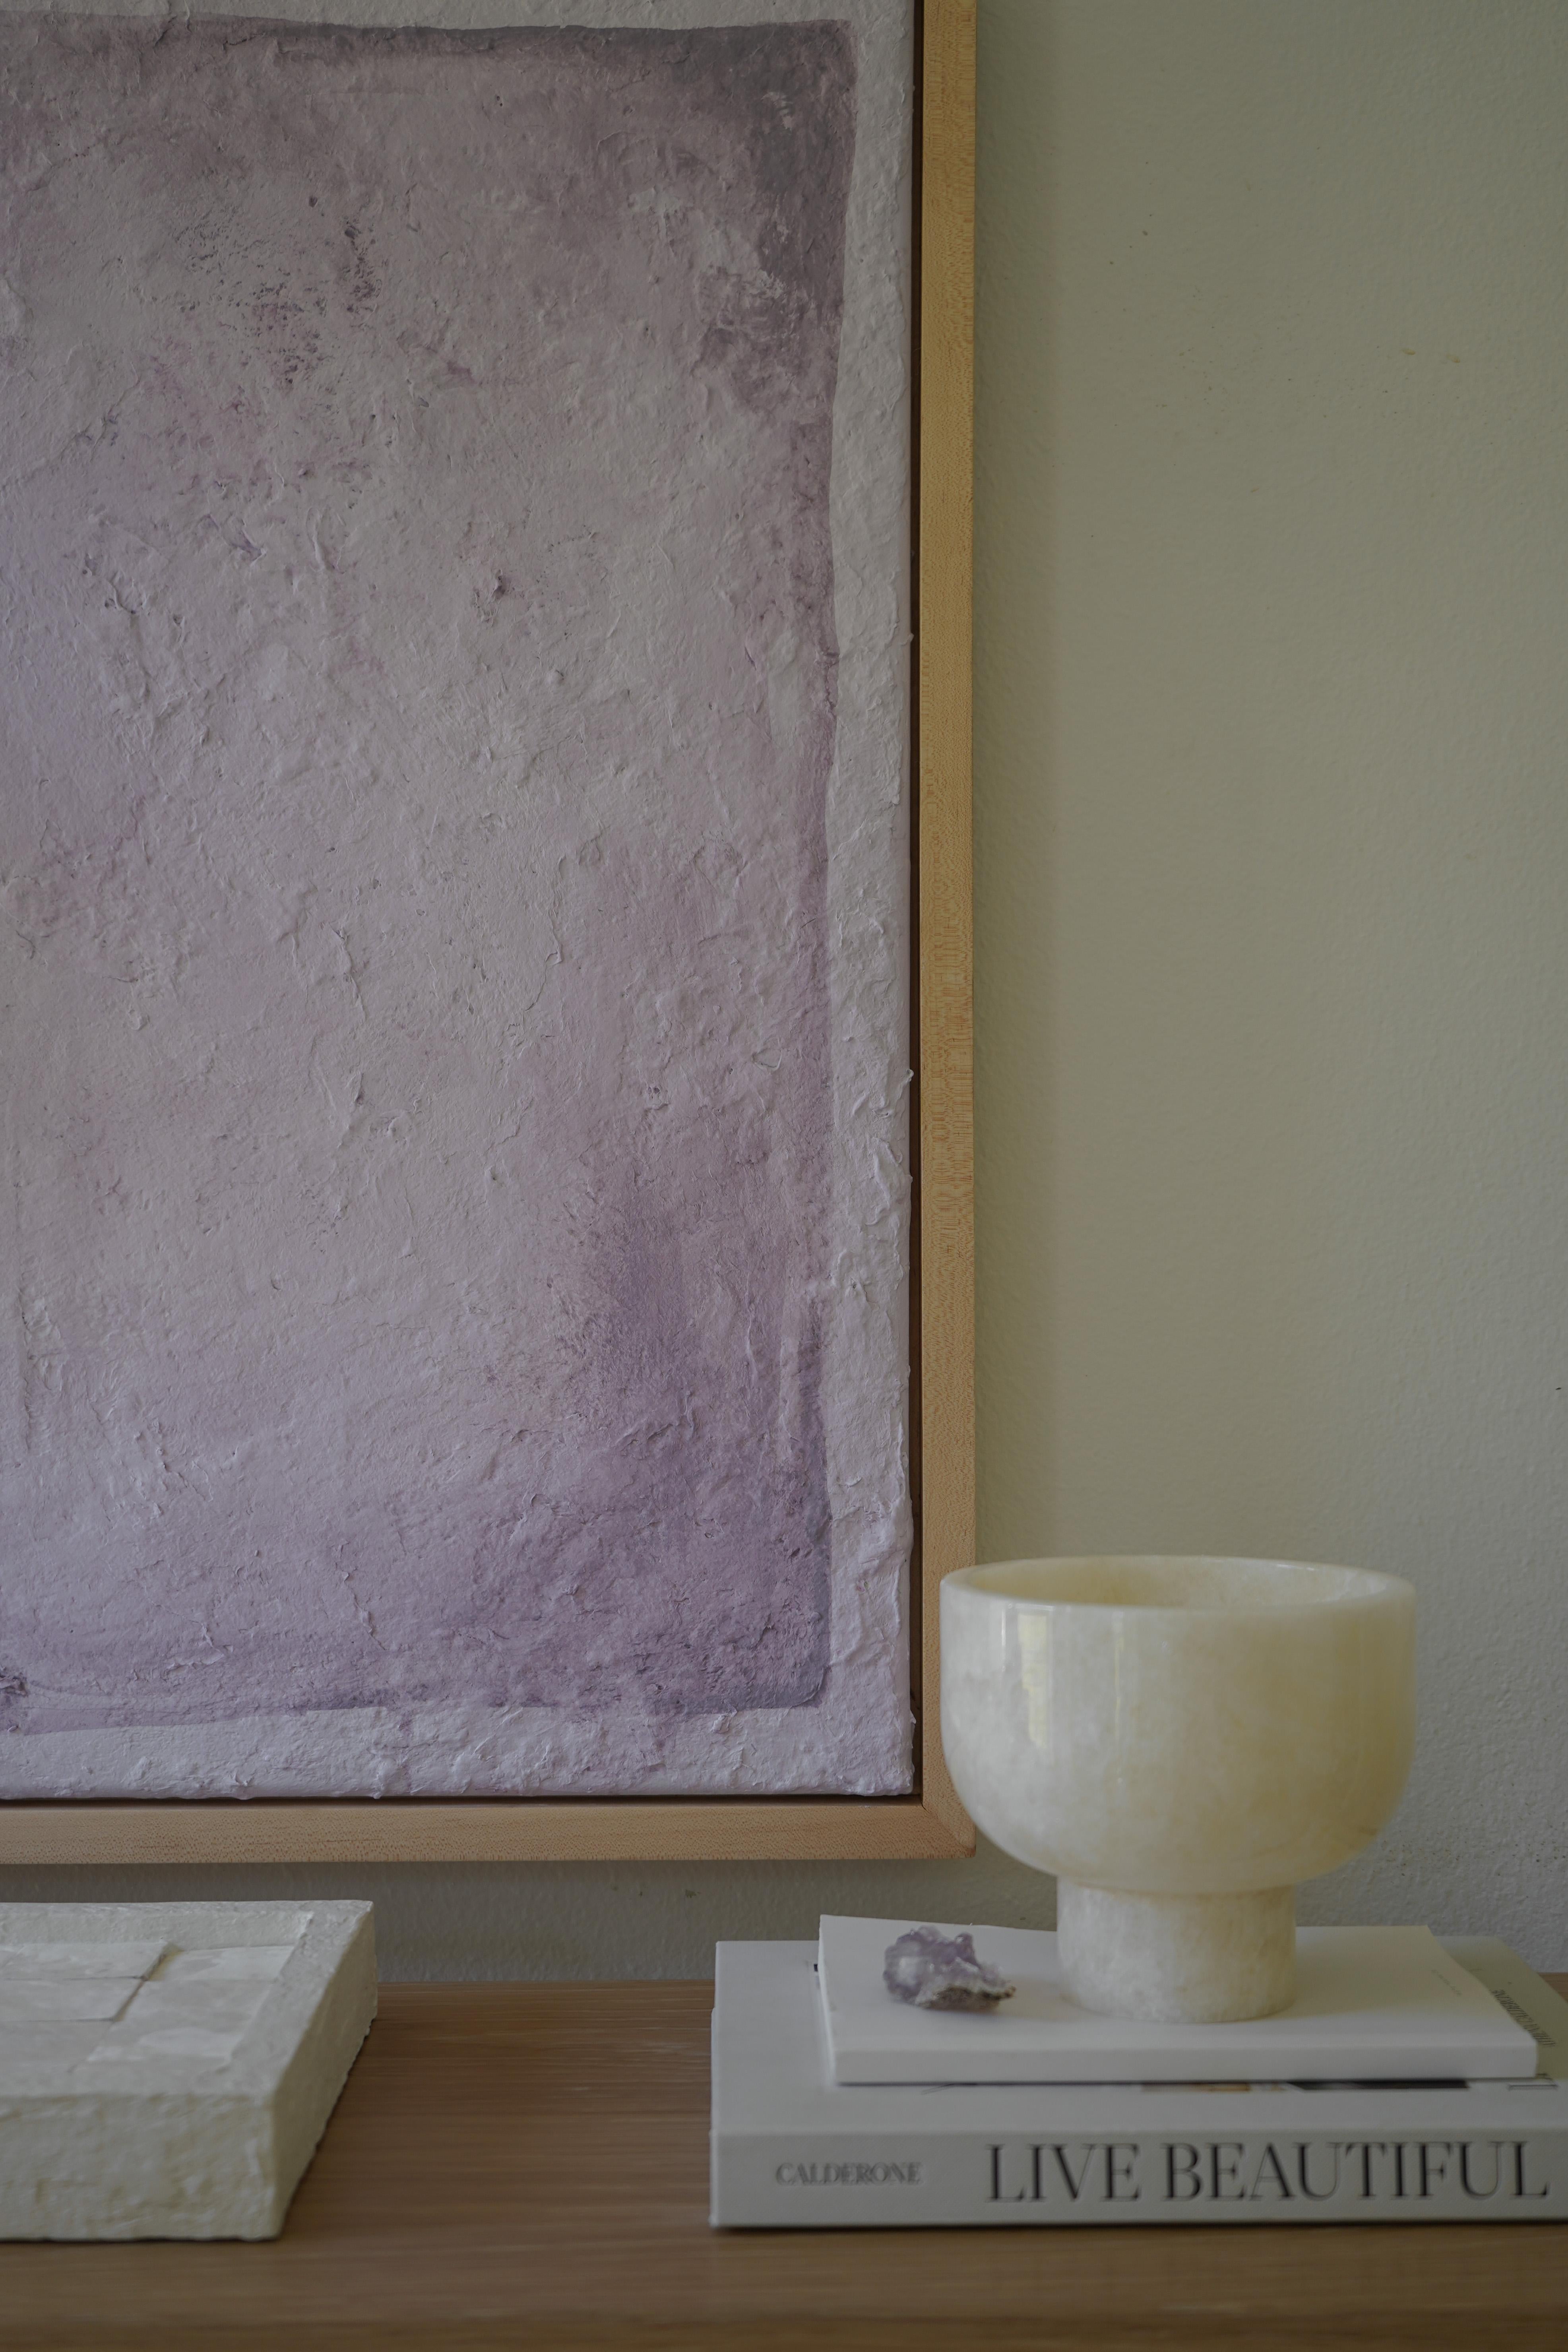 Subdued Symmetry in Lavender - Painting by Mackenzie Jones